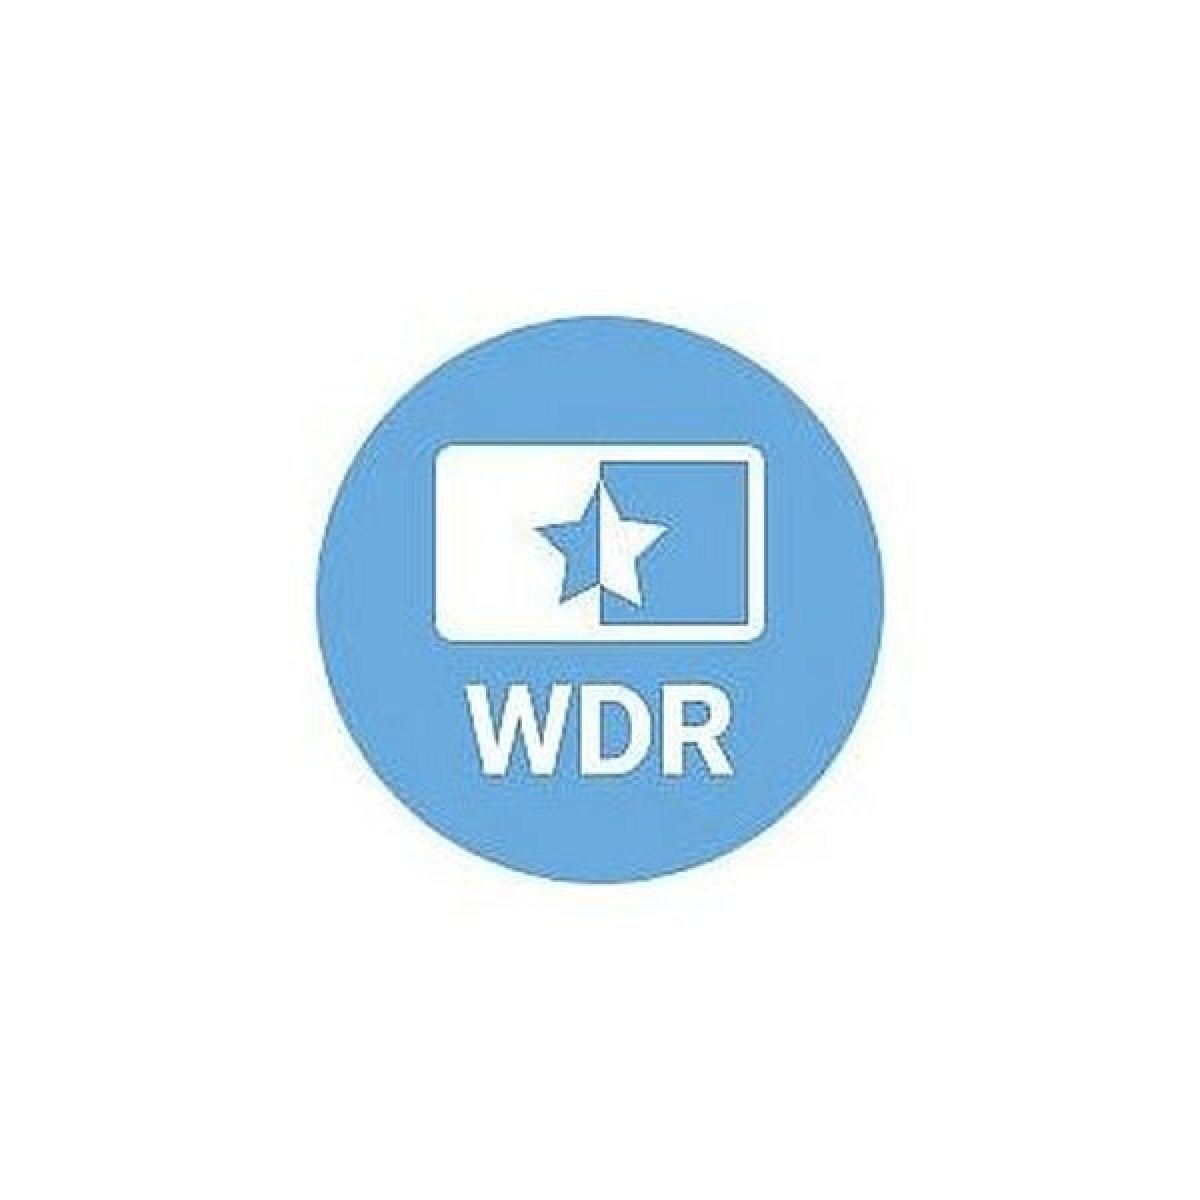 WDR (široký dynamický rozsah)